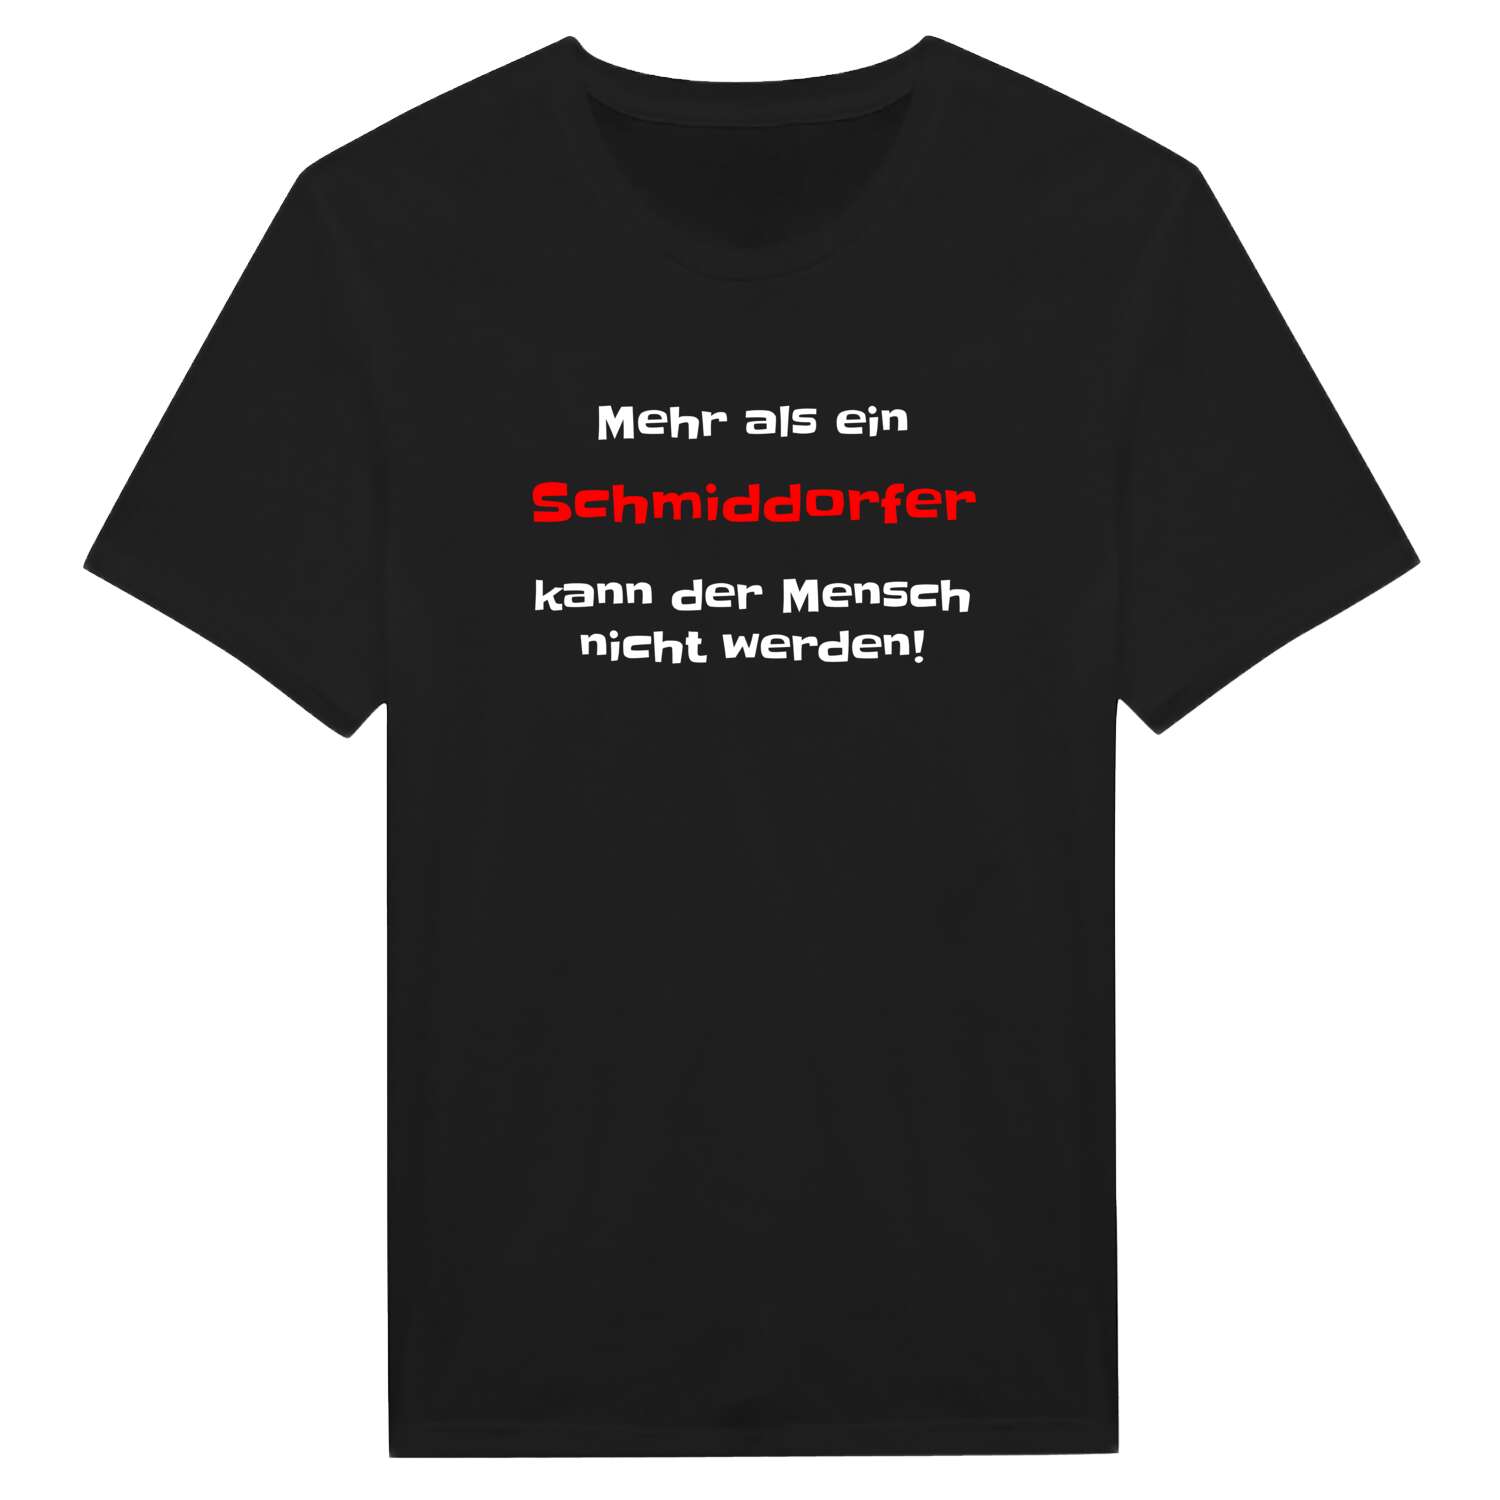 Schmiddorf T-Shirt »Mehr als ein«